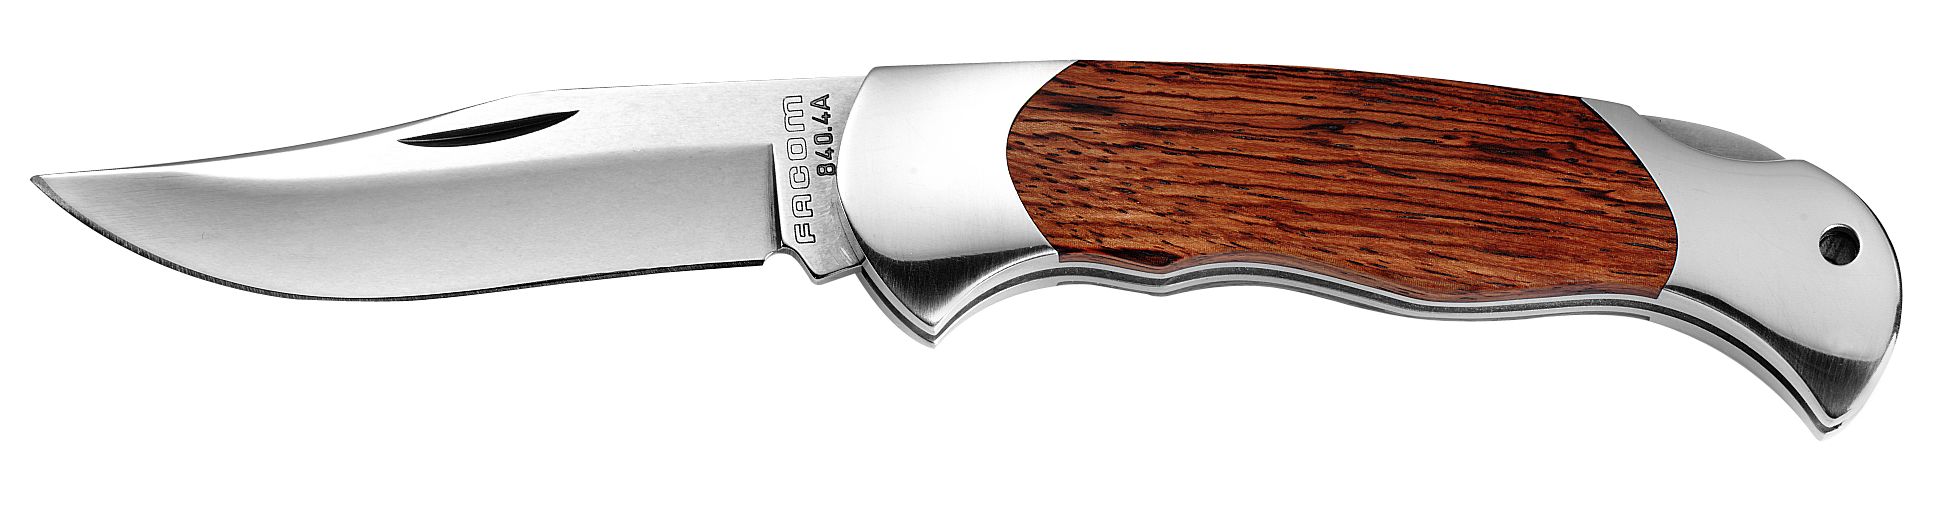 Couteau à cran d'arrêt manche bois - Maintenance Industrie